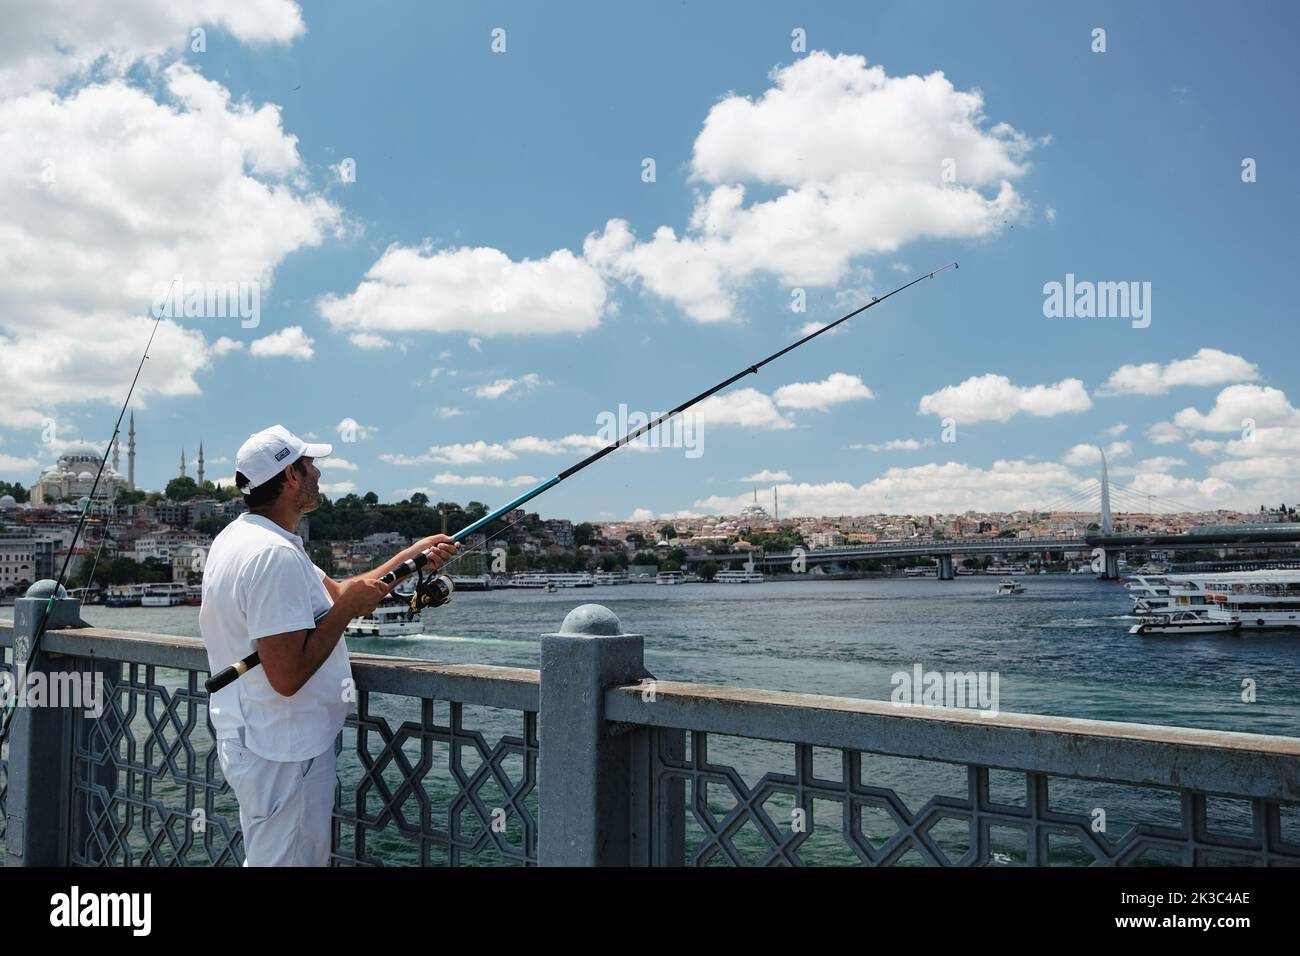 Pêcheur grand angle sur le pont Eminönü Galata, temps nuageux, homme d'âge moyen en blanc, Turquie Istanbul concept touristique, passe-temps et loisirs Banque D'Images